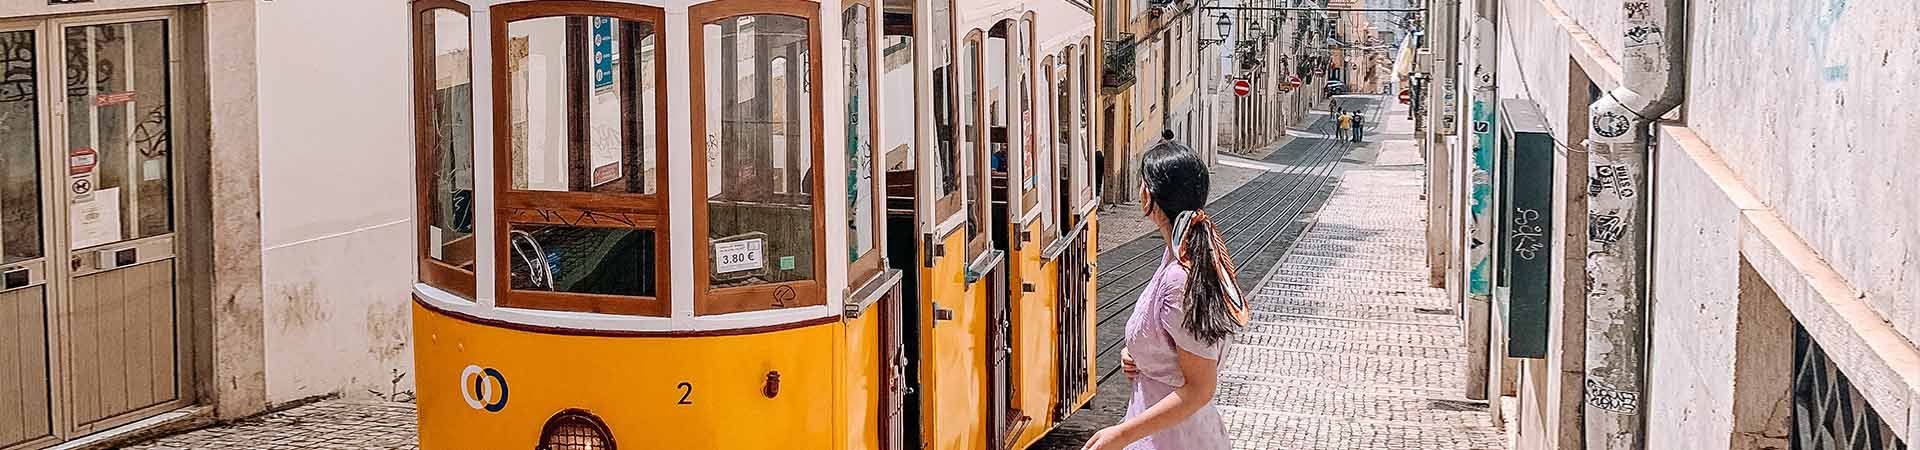 Al centro dell'immagine, un tram di Lisbona giallo e bianco che passa per una delle strade acciottolate di Lisbona fiancheggiata da edifici con facciate antiche. A destra del tram c'è una ragazza bruna, indossa un vestito lilla, ha i capelli legati con un fazzoletto colorato e guarda verso il tram.